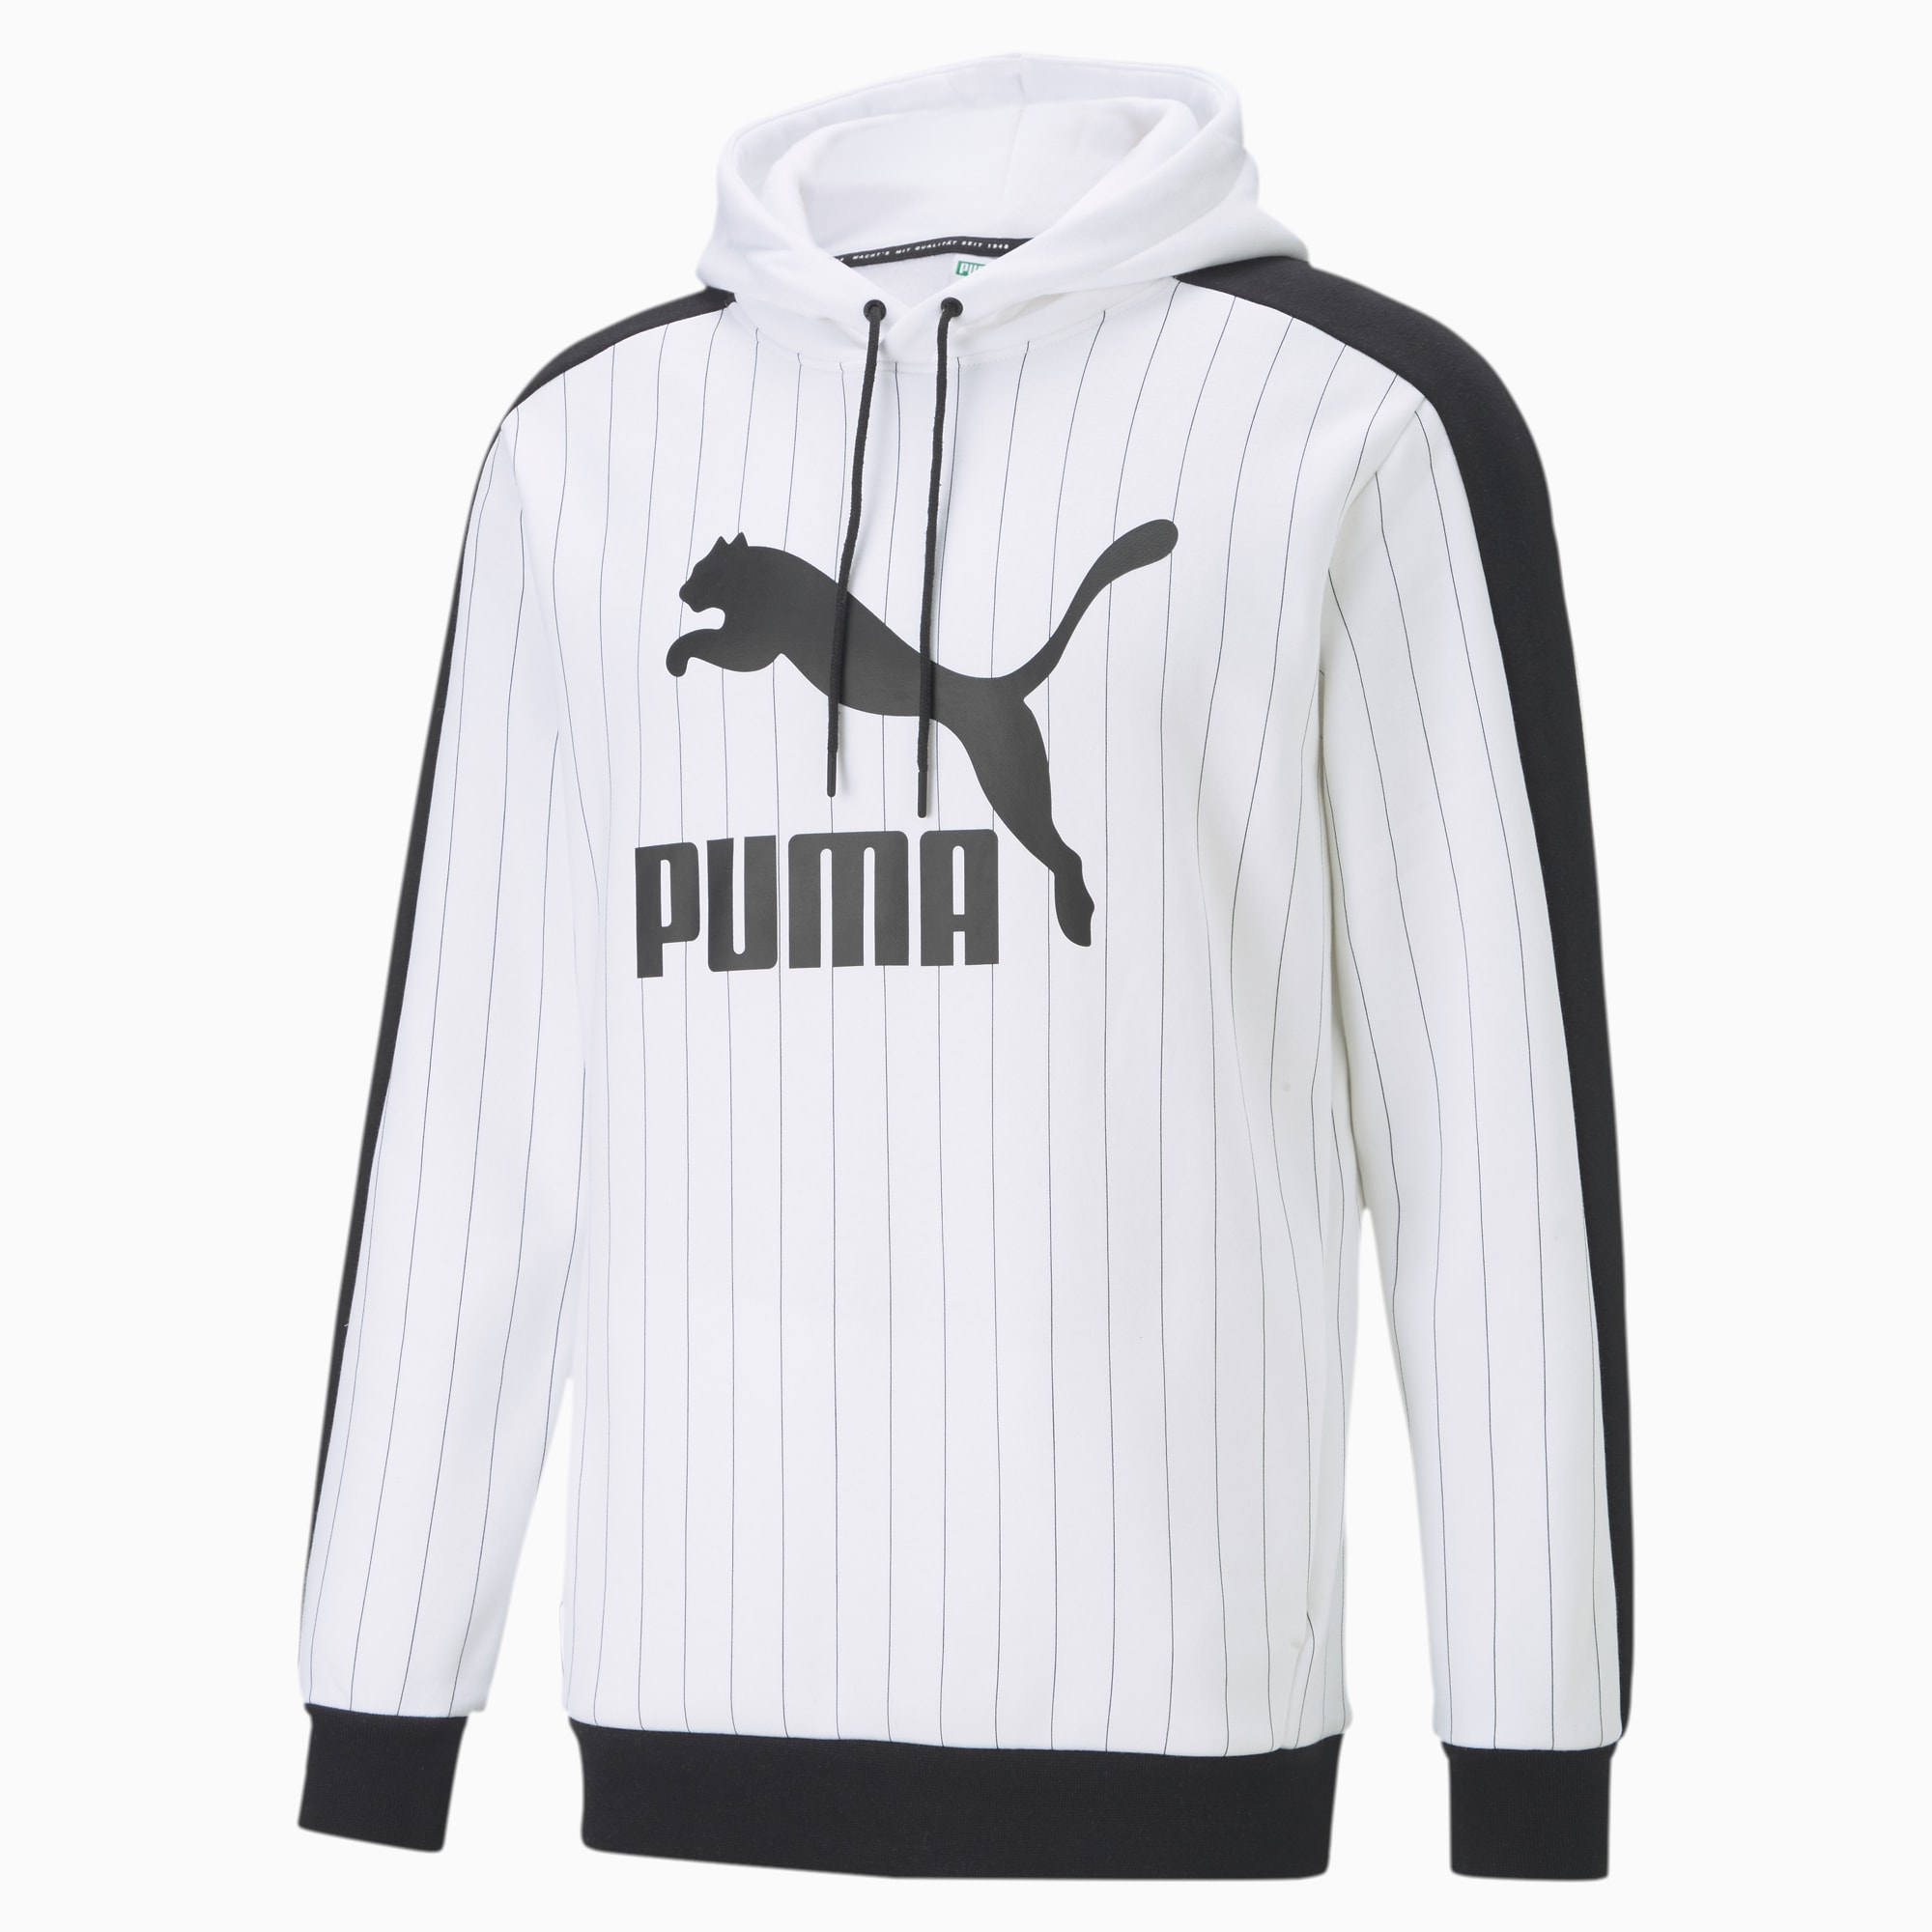 Puma公式 ピンストライプ Aop スウェット フーディー ロゴスエットパーカー メンズ Puma White プーマ スウェット パーカー プーマ